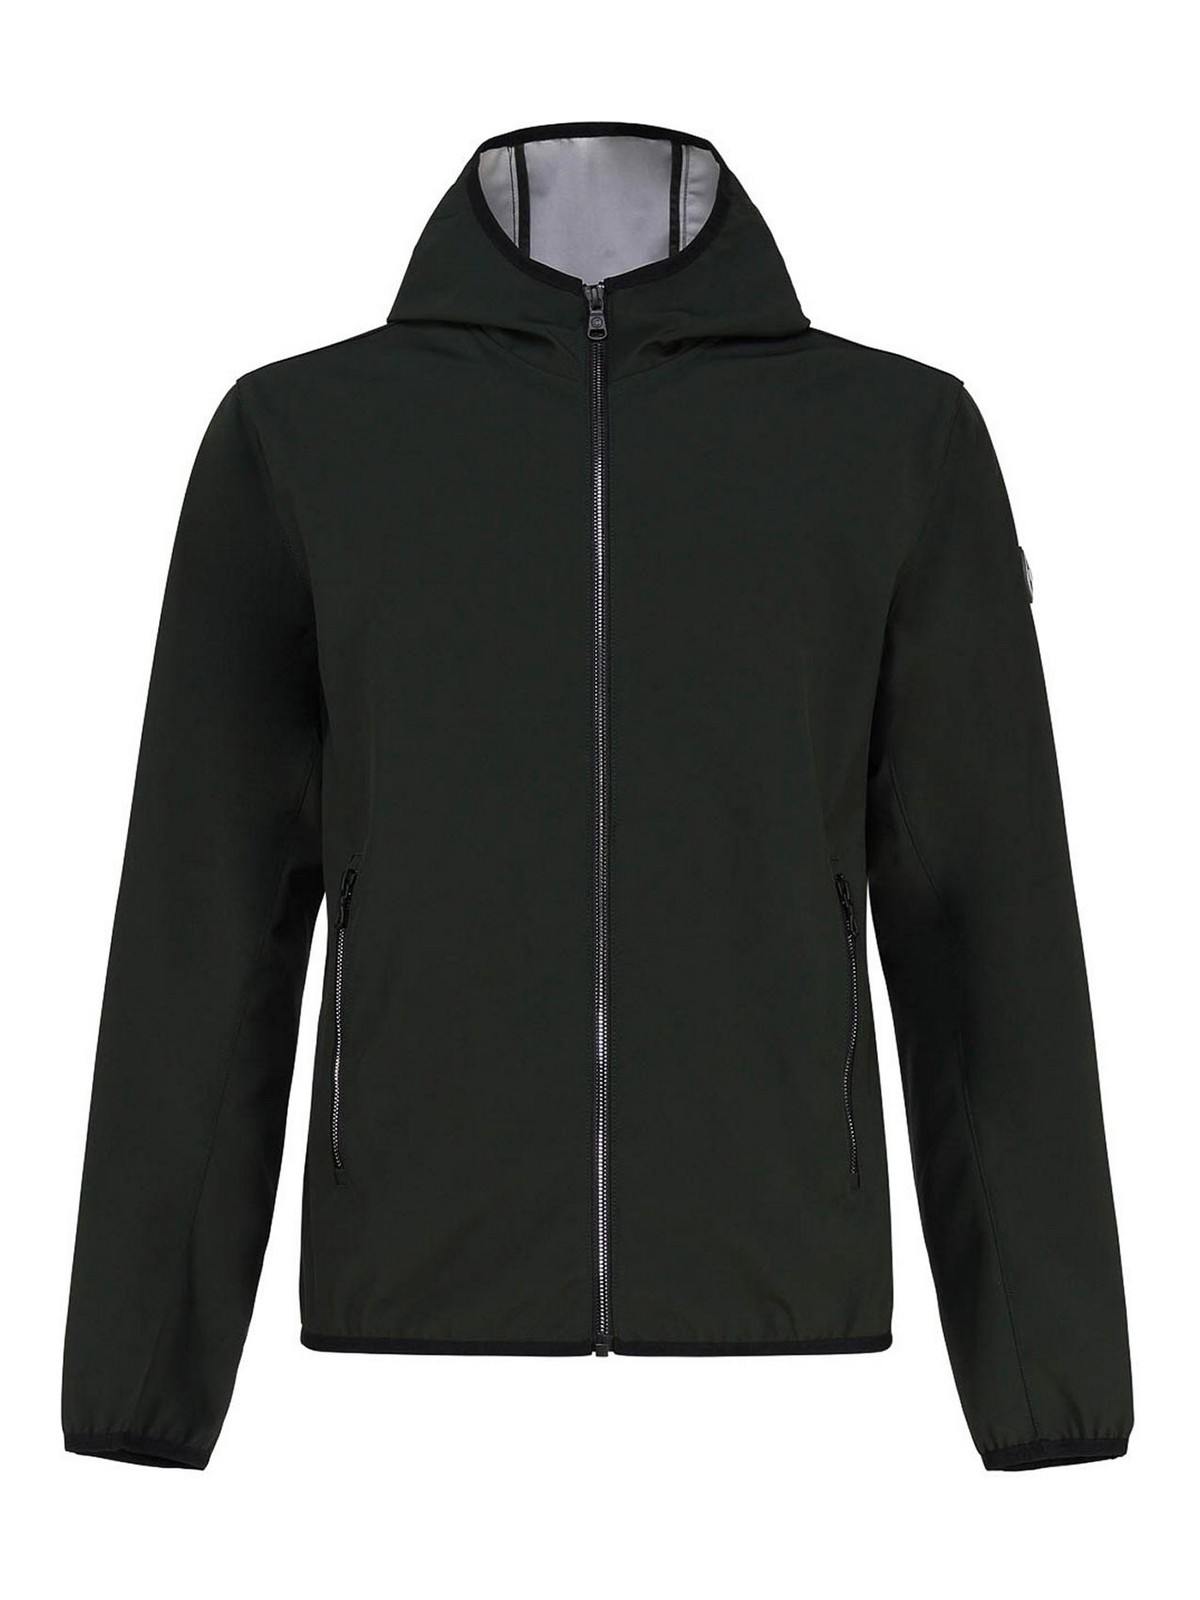 Colmar Originals Softshell Jacket With Hood In Black